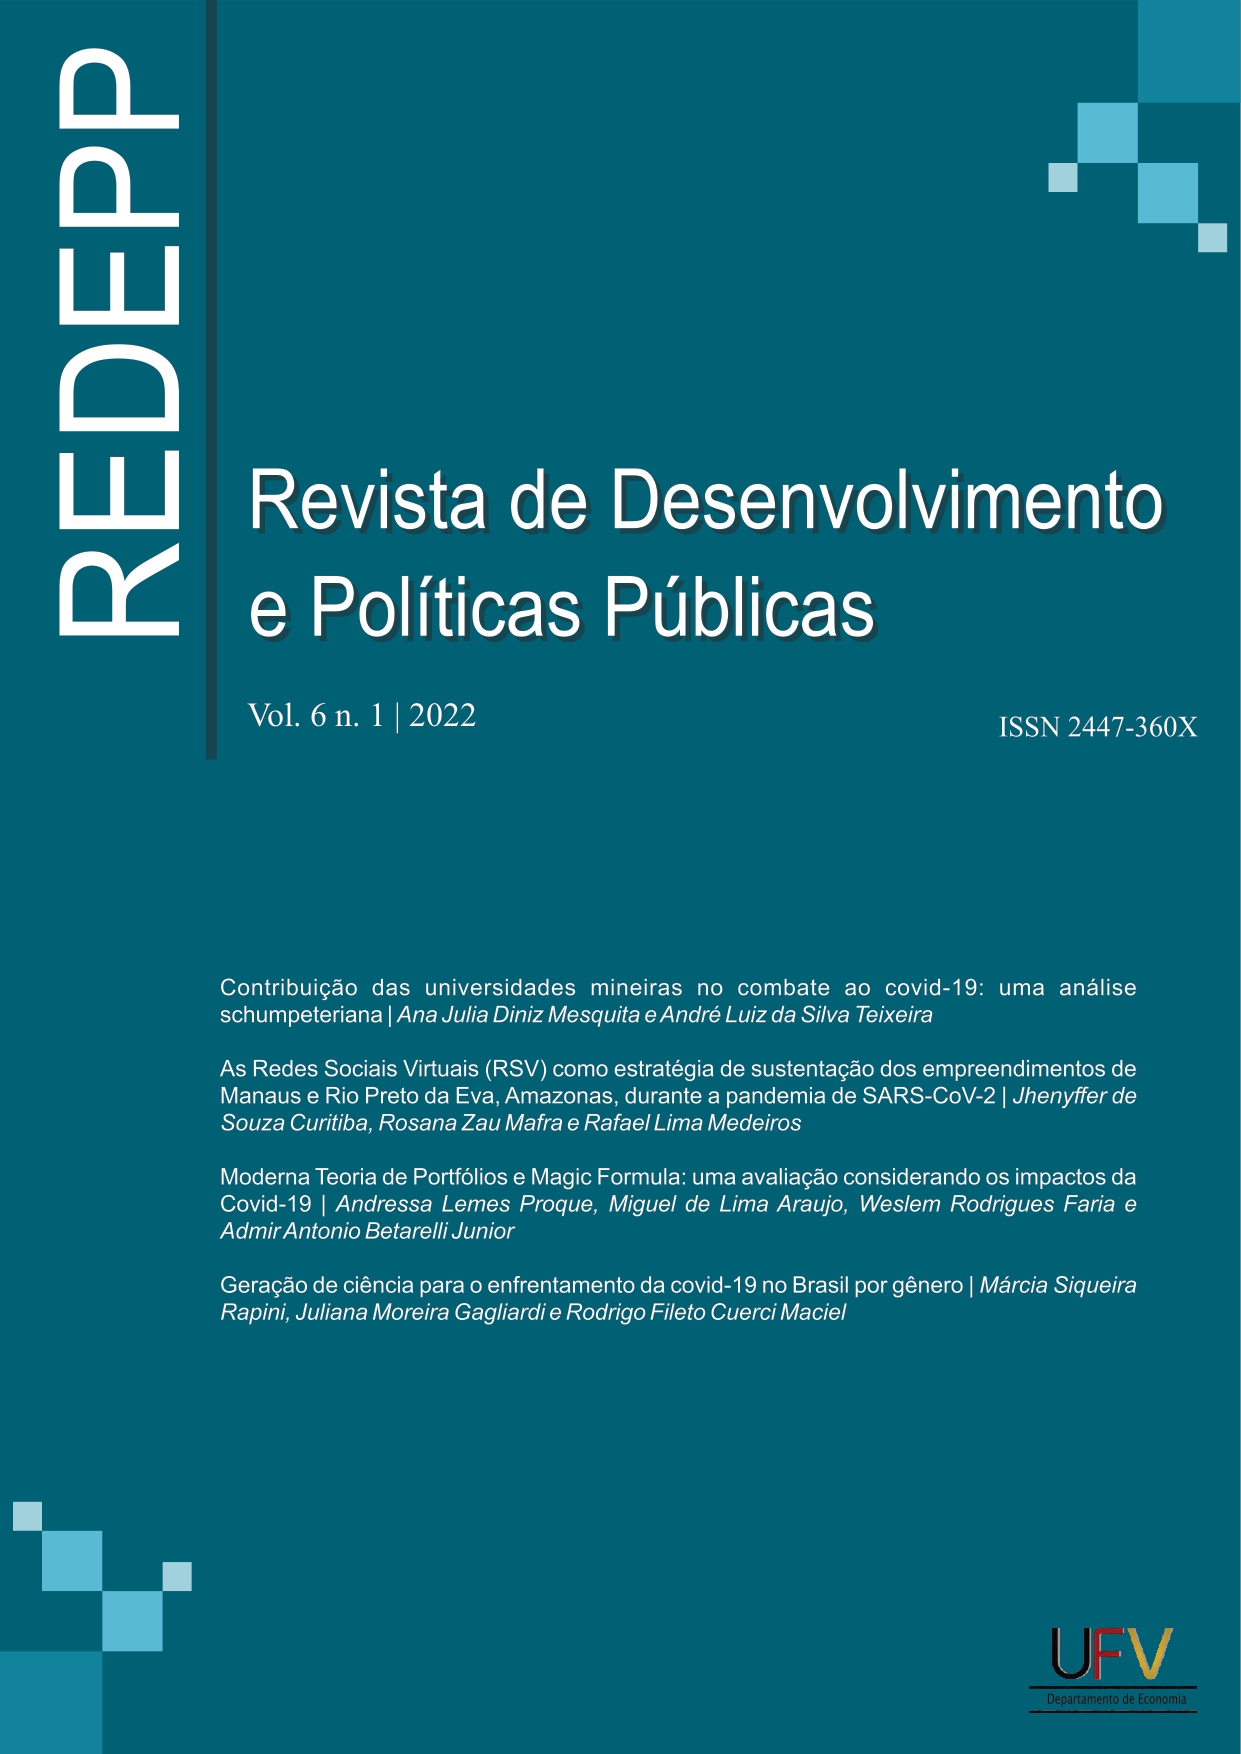 					View Vol. 6 No. 1 (2022): Revista de Desenvolvimento e Políticas Públicas [ISSN: 2447-360X]
				